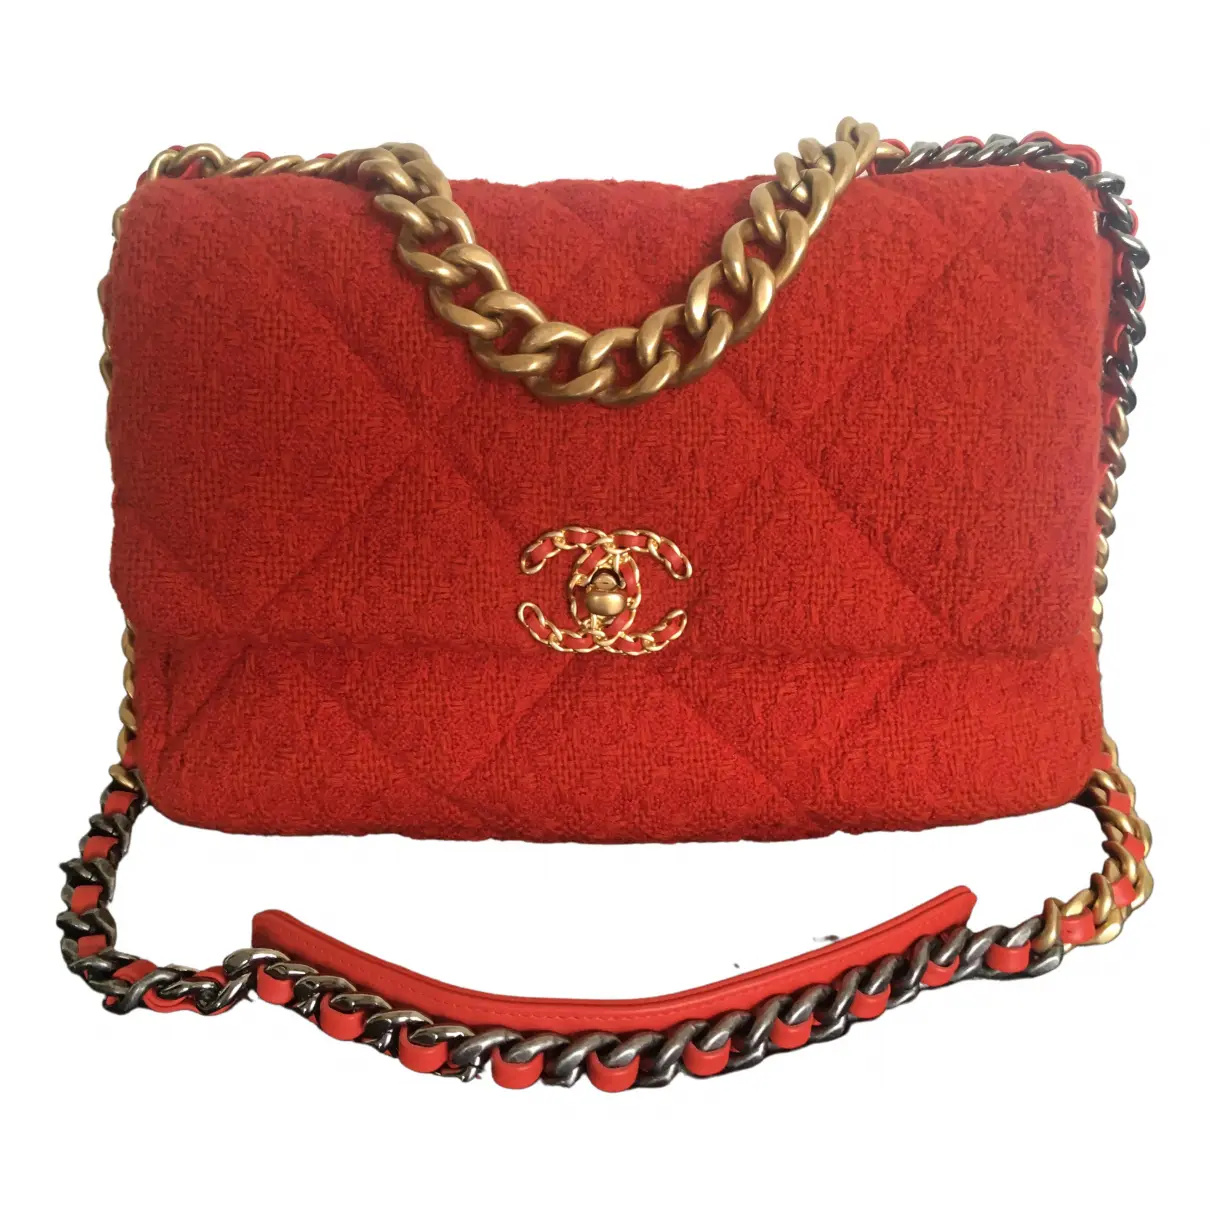 Chanel 19 tweed handbag Chanel